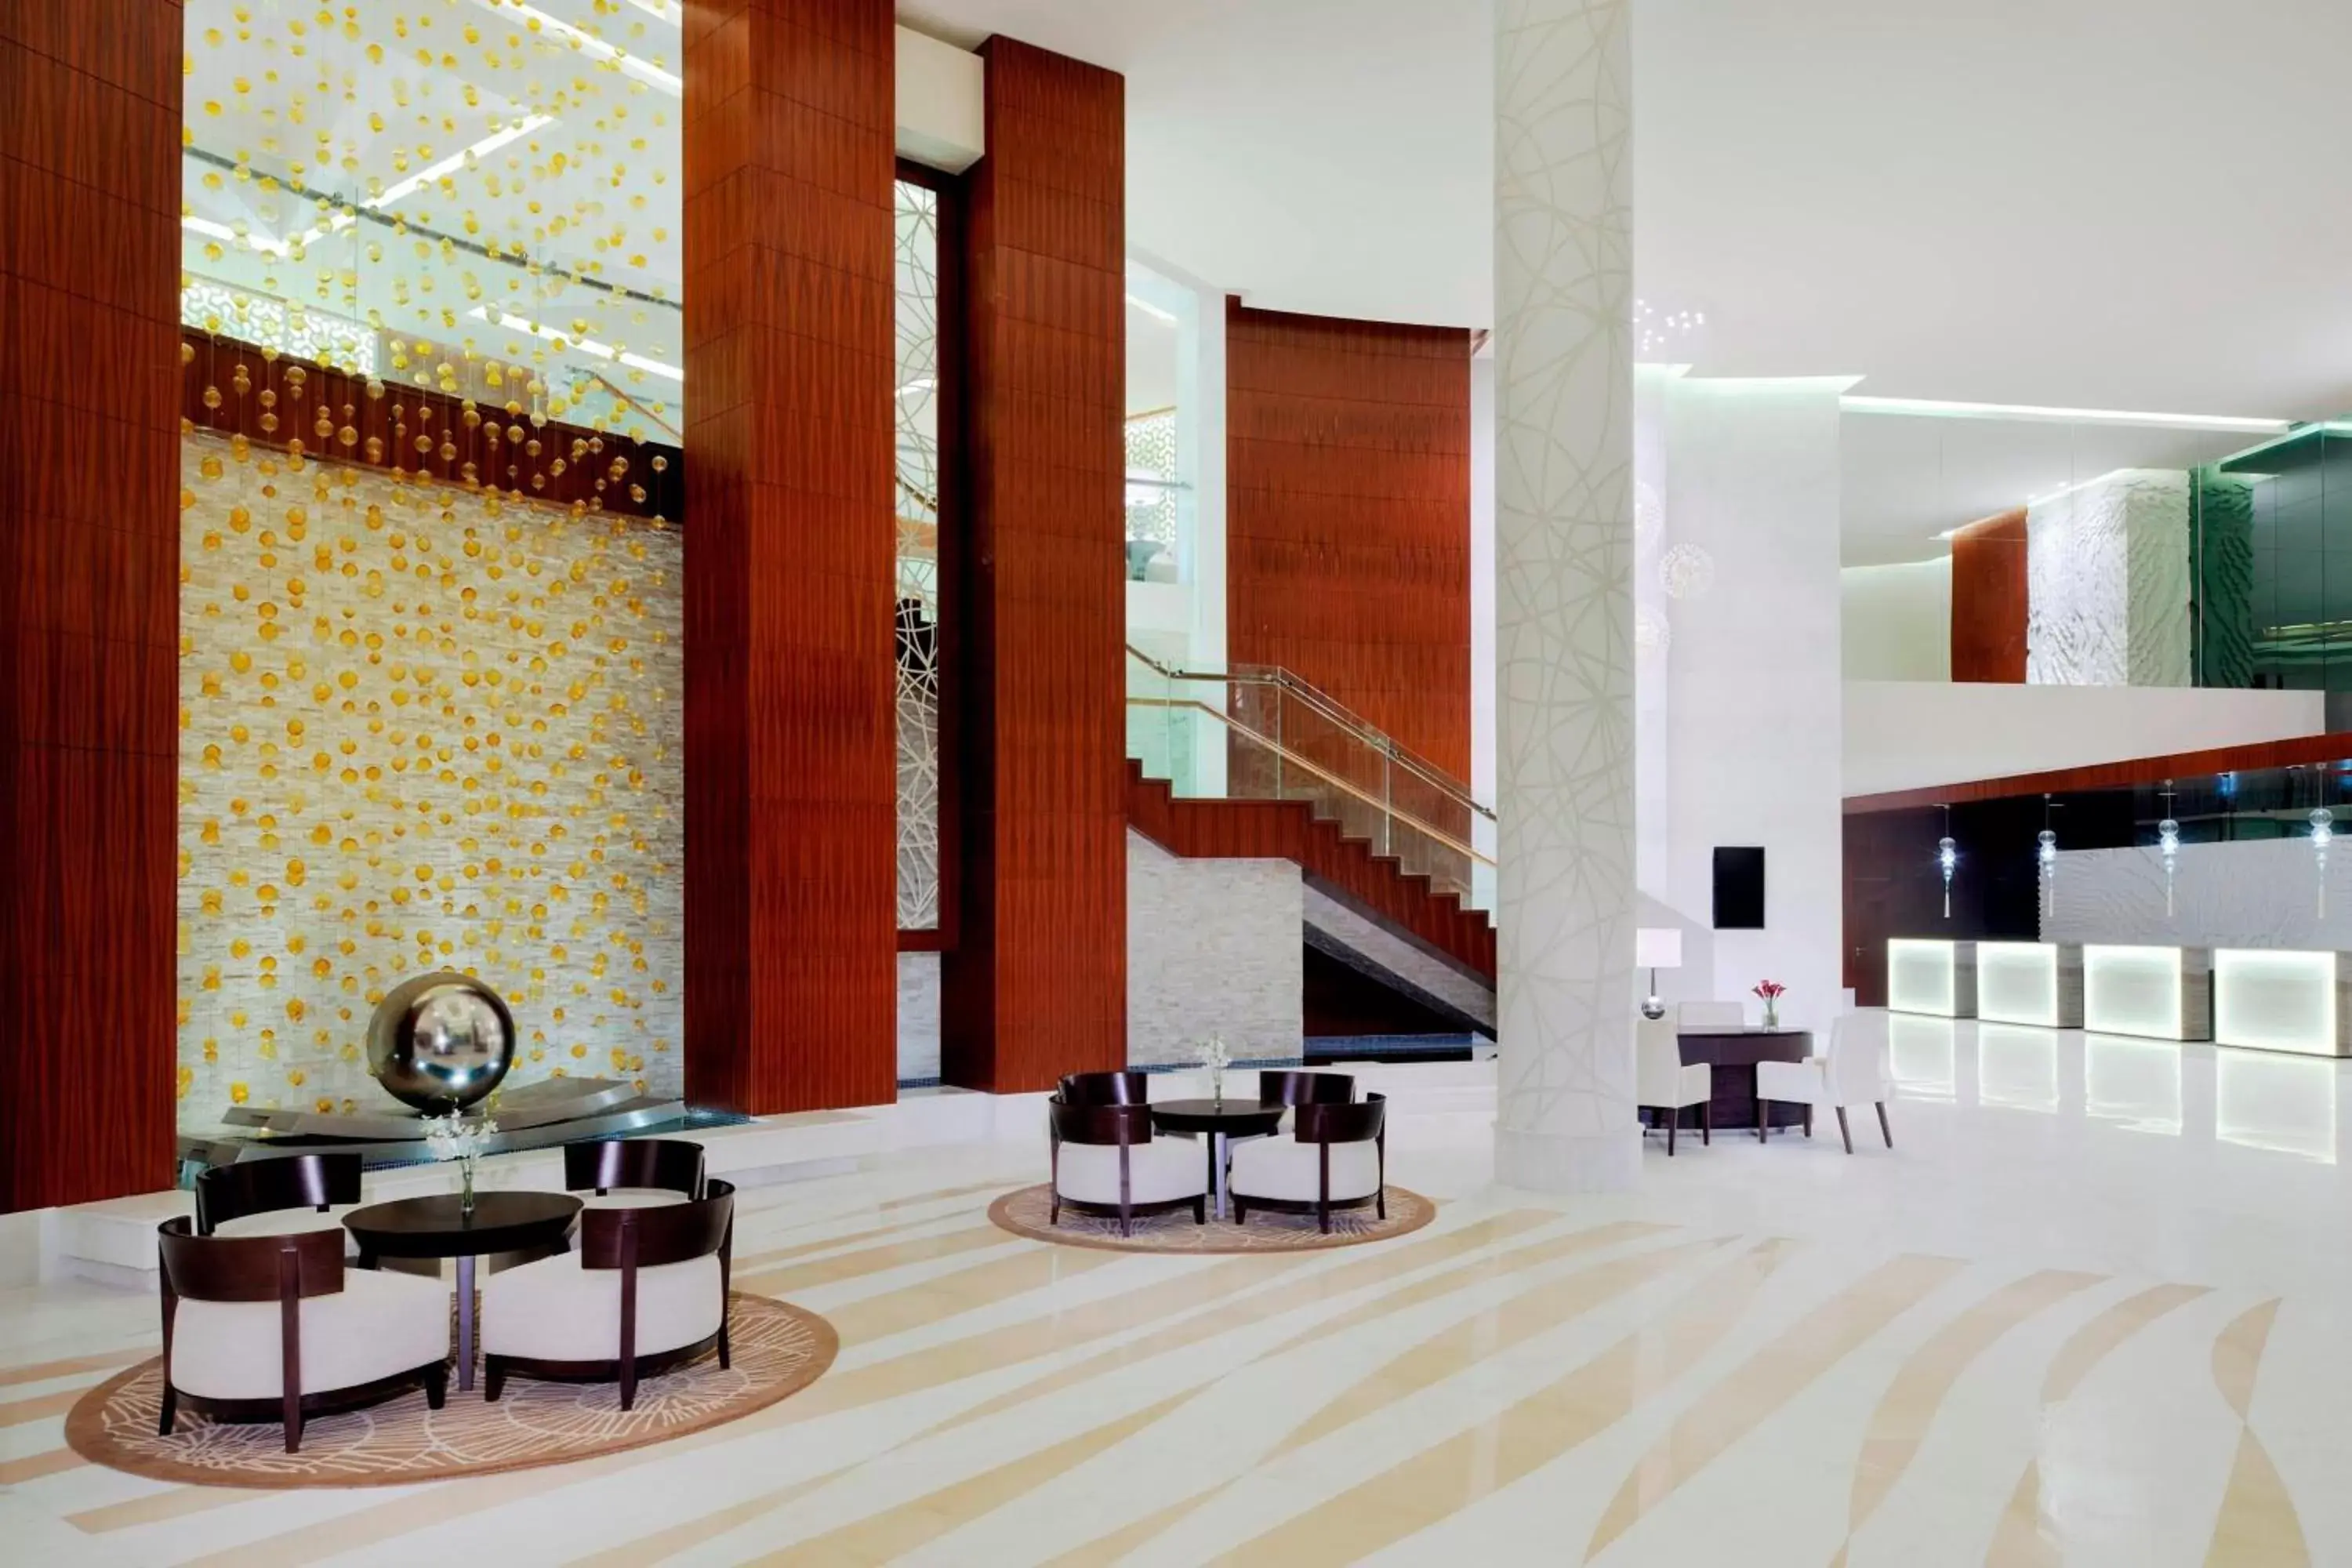 Lobby or reception in Marriott Hotel, Al Jaddaf, Dubai